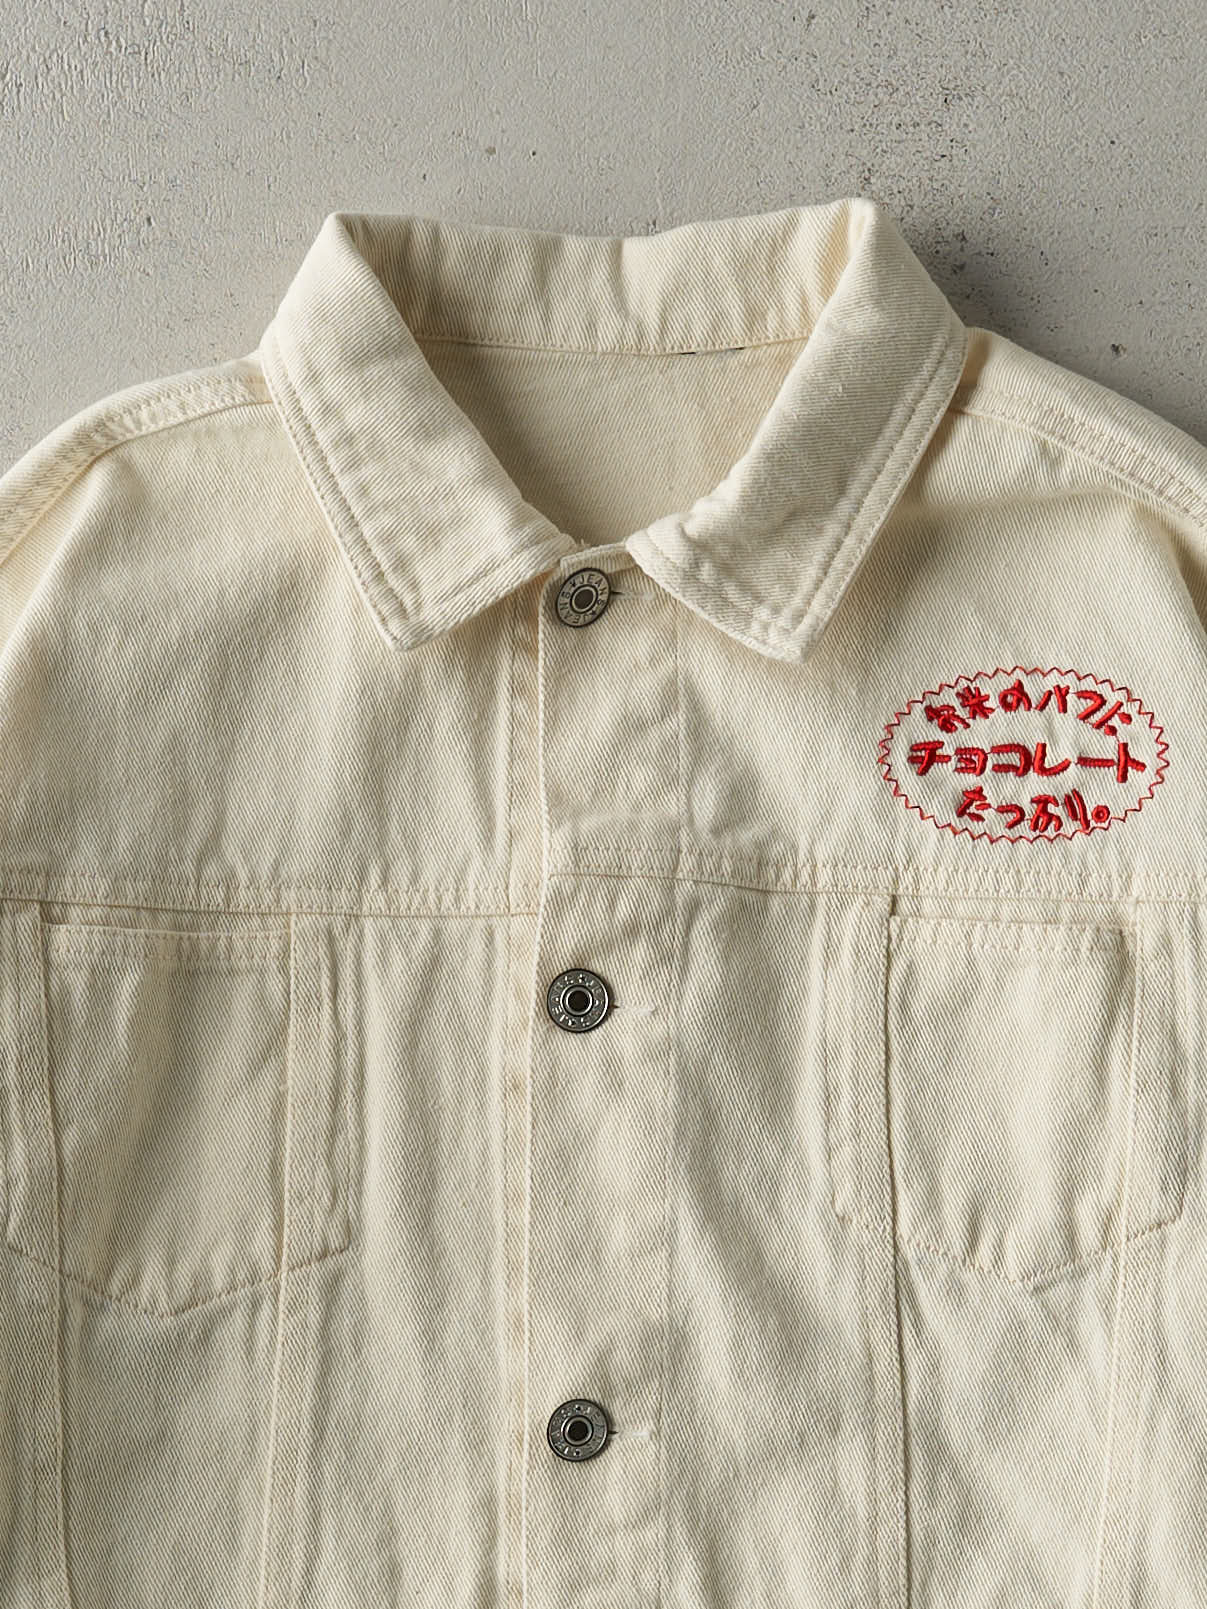 Vintage Y2K Beige Embroidered Car Denim Jacket (M)